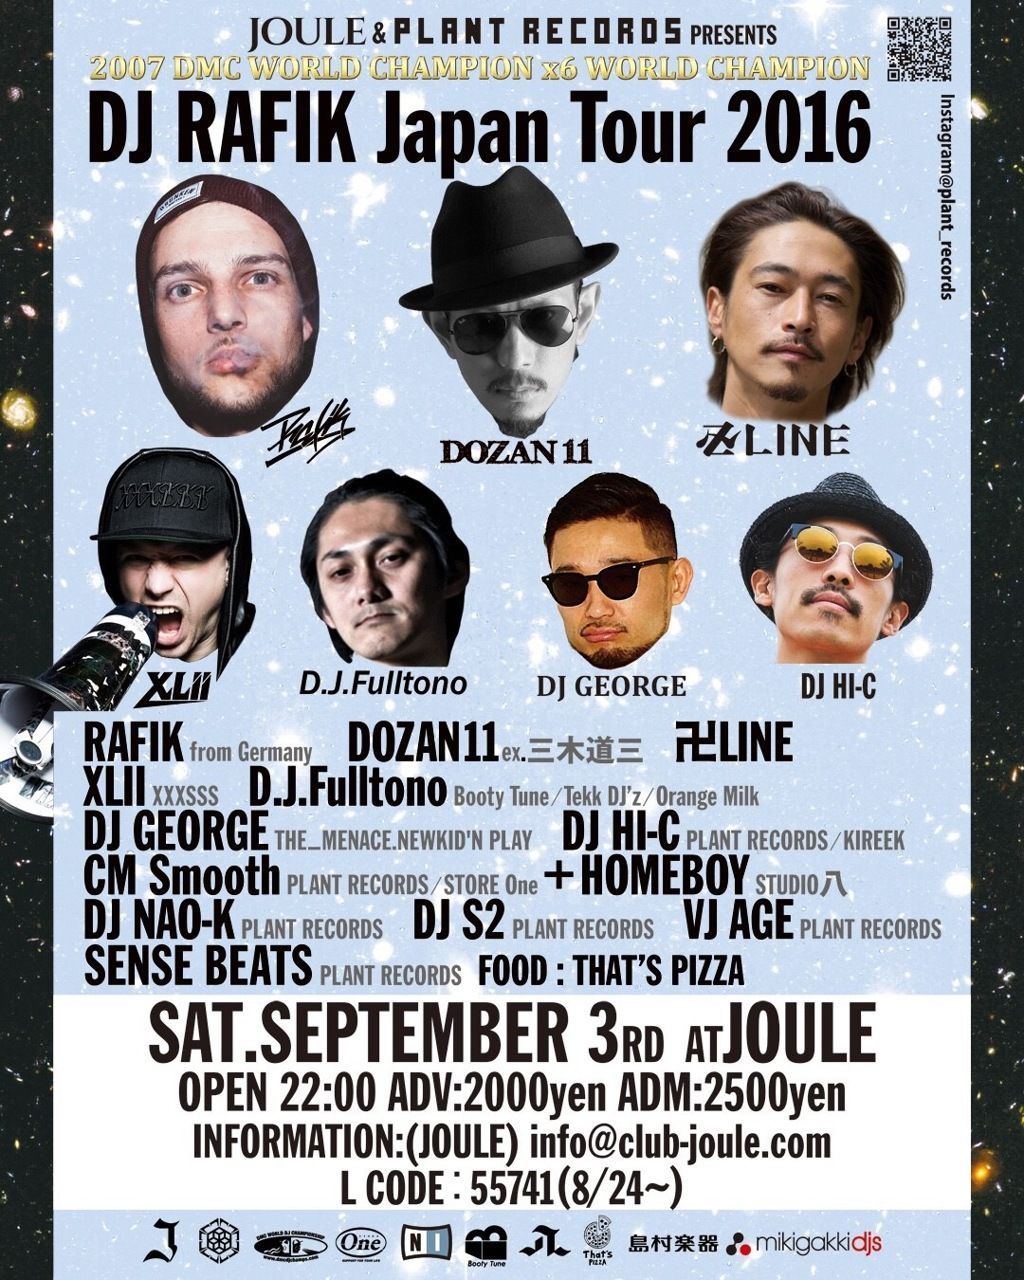 DJ RAFIK JAPAN TOUR 2016 in Osaka